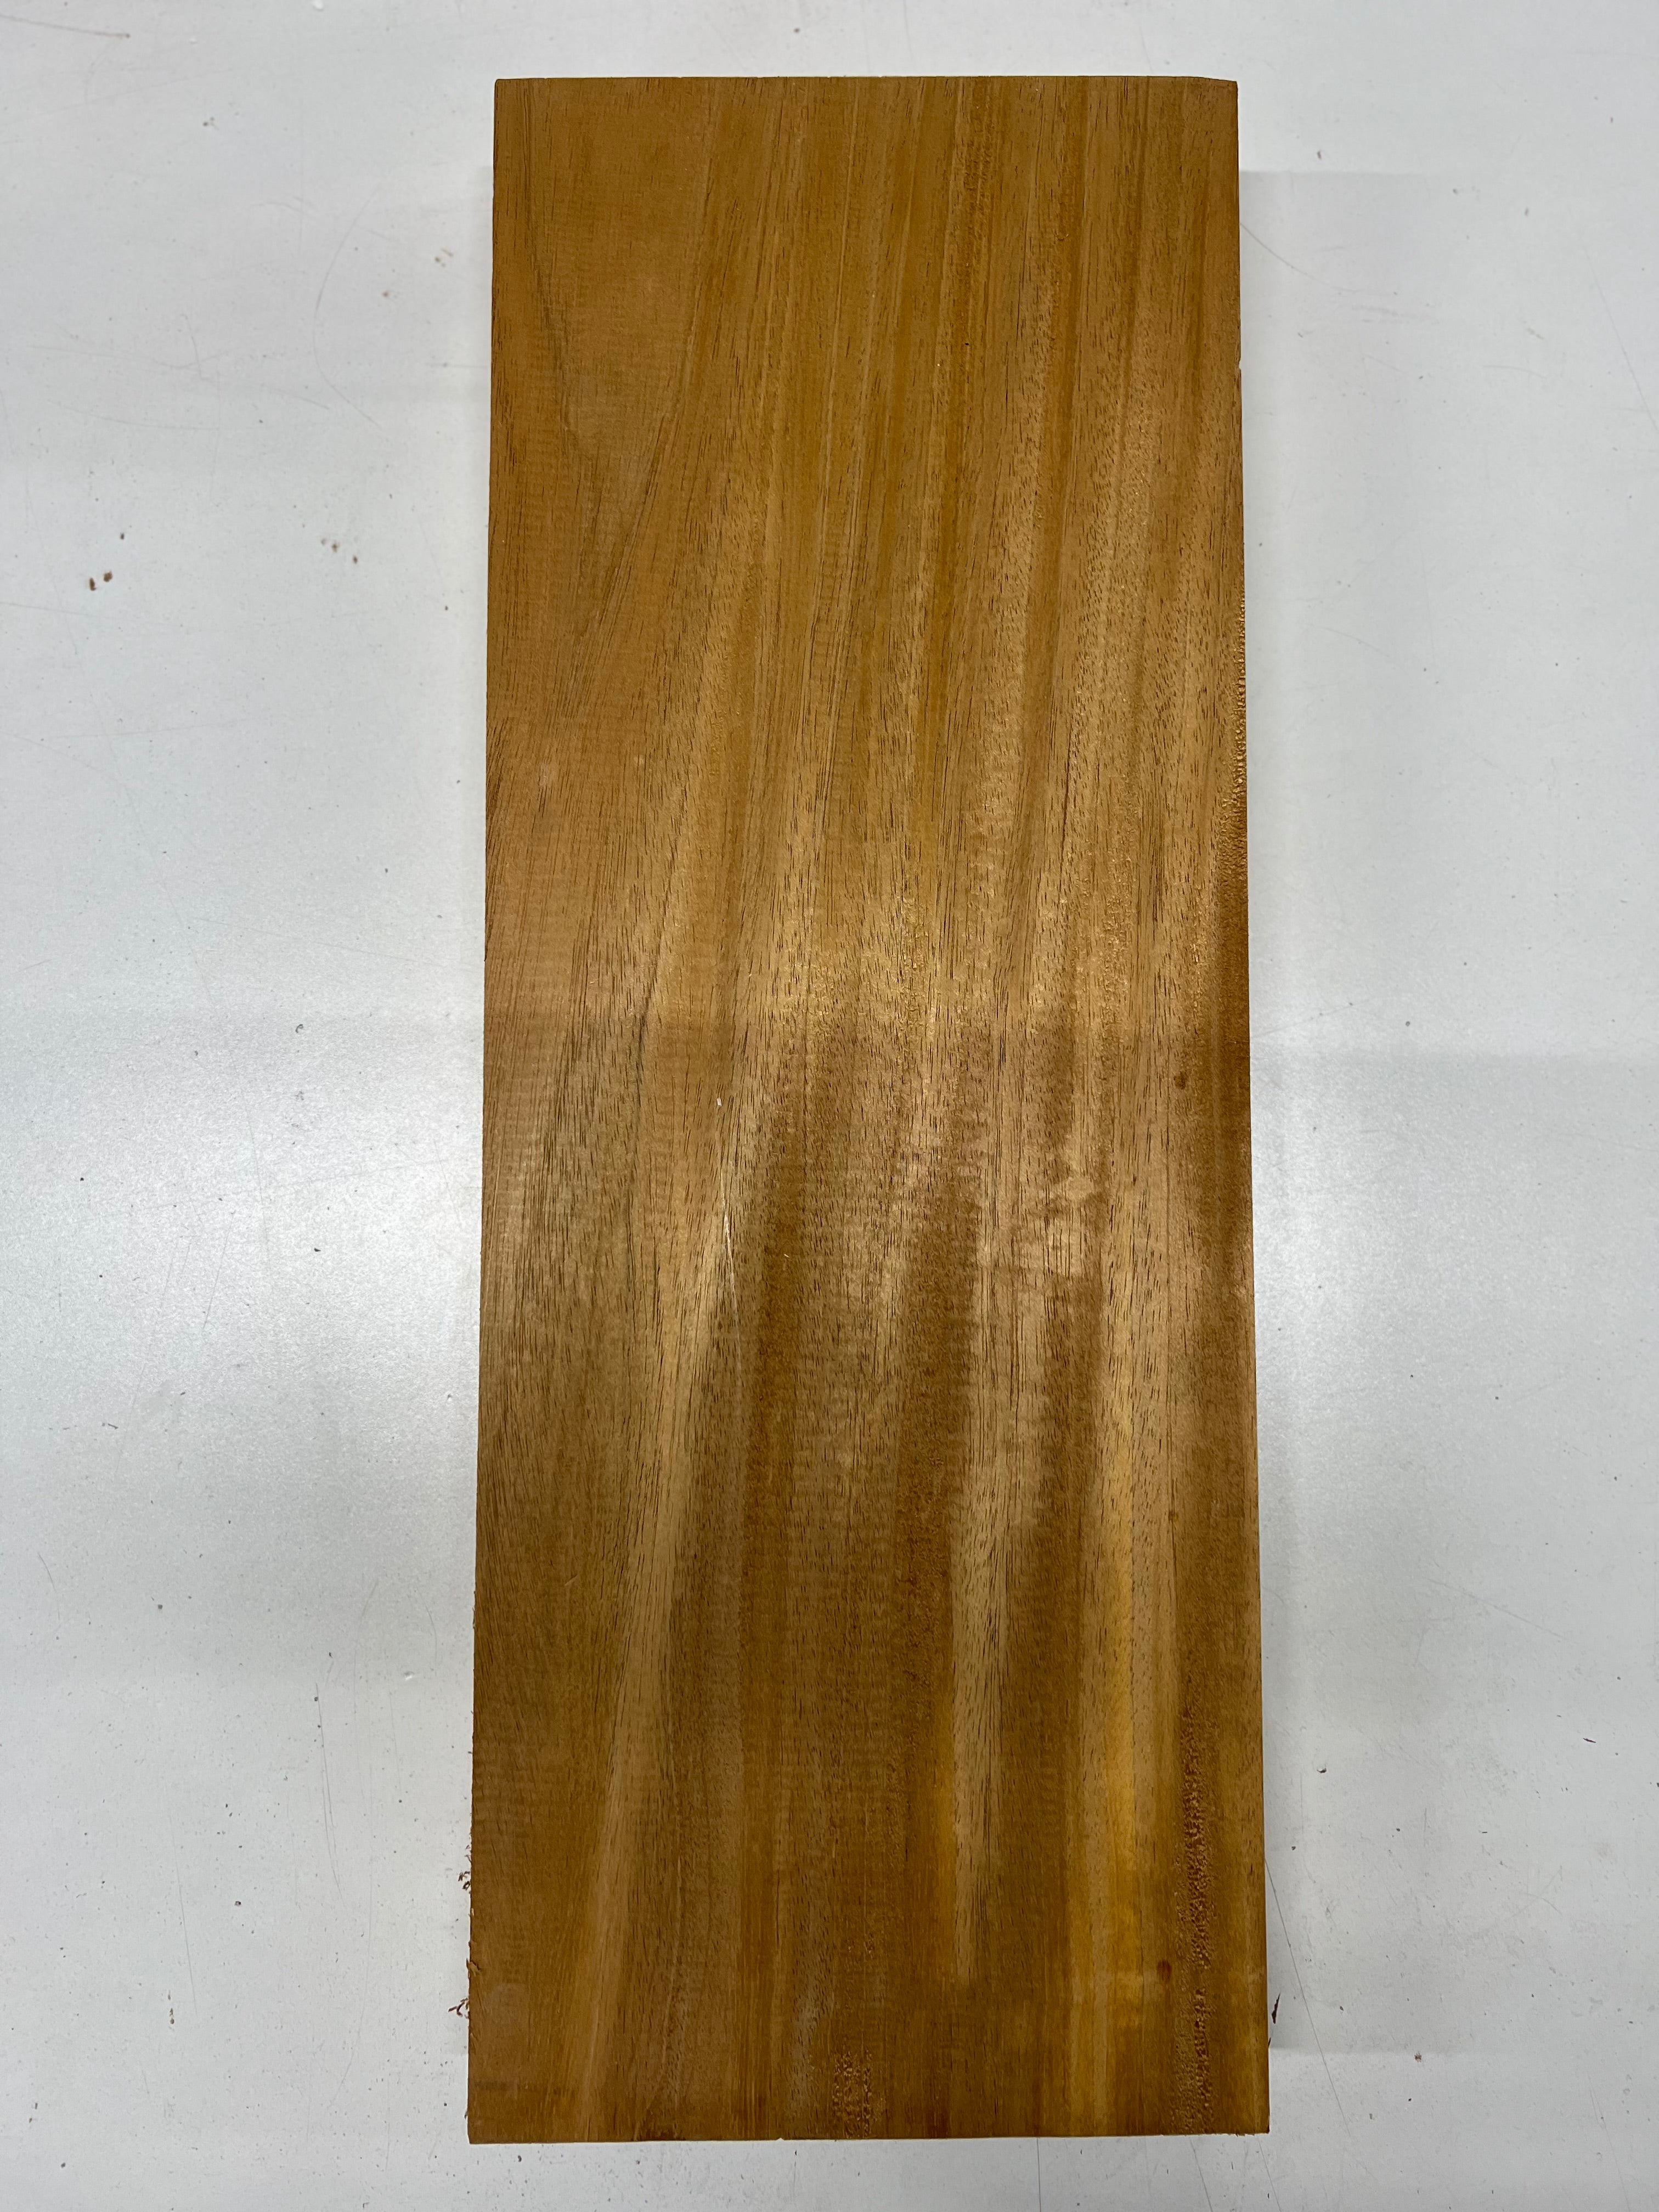 Honduran Mahogany Lumber Board Wood Blank 22&quot;x8-3/8&quot;x2&quot; 